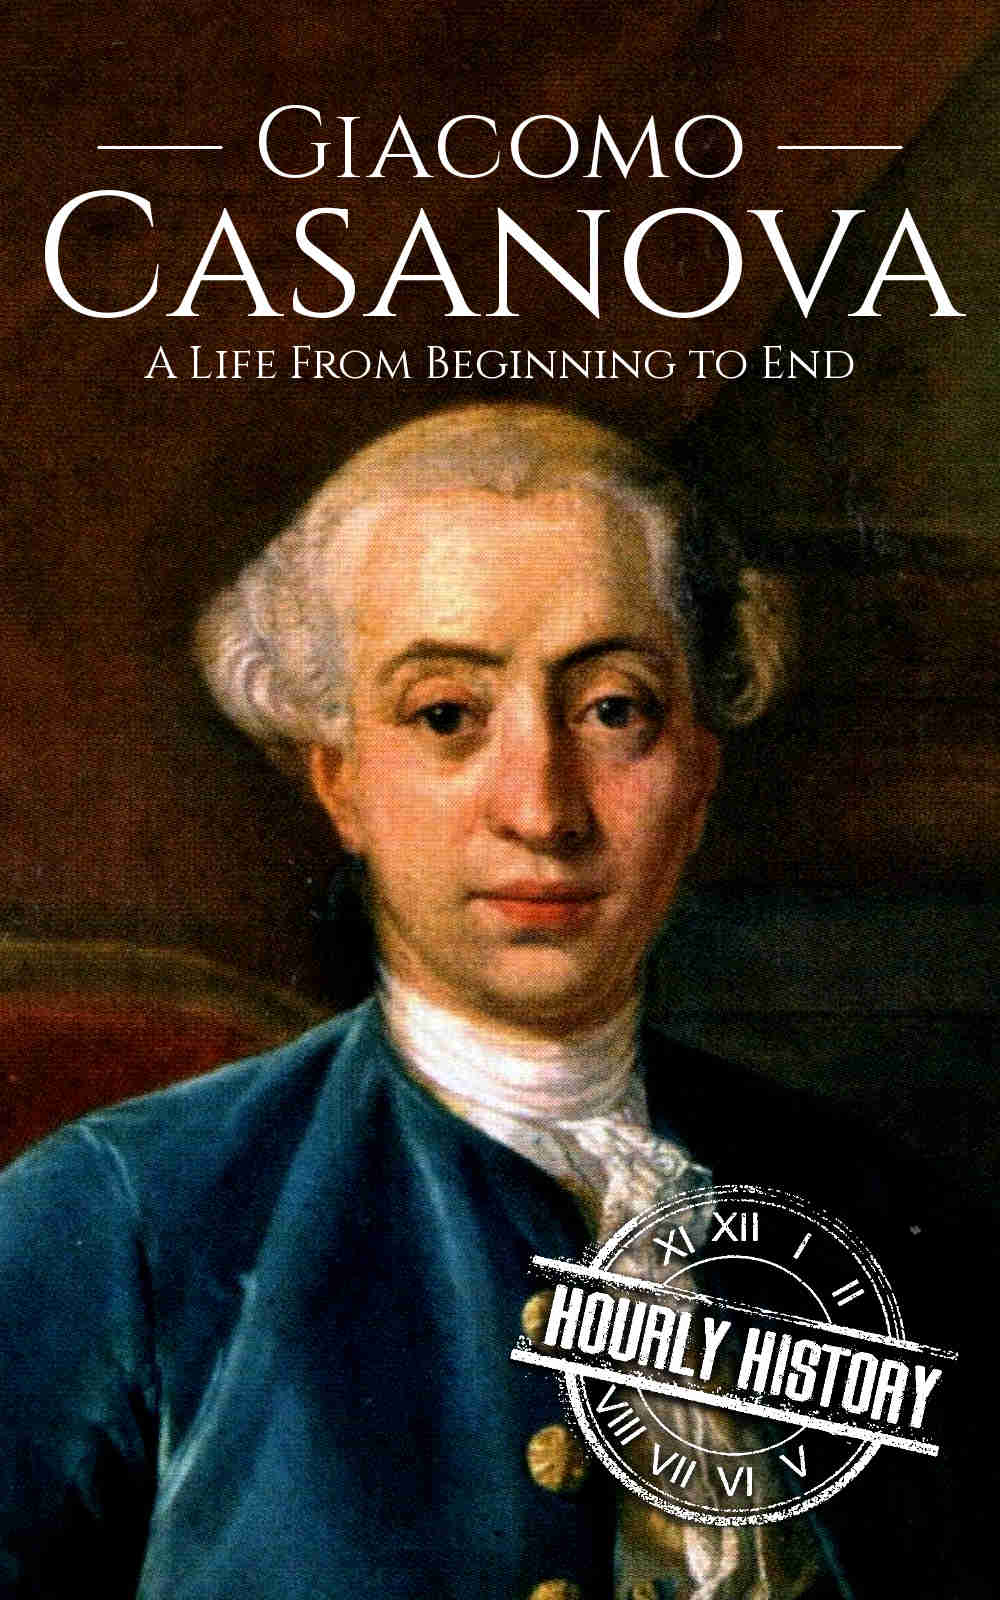 Book cover for Giacomo Casanova